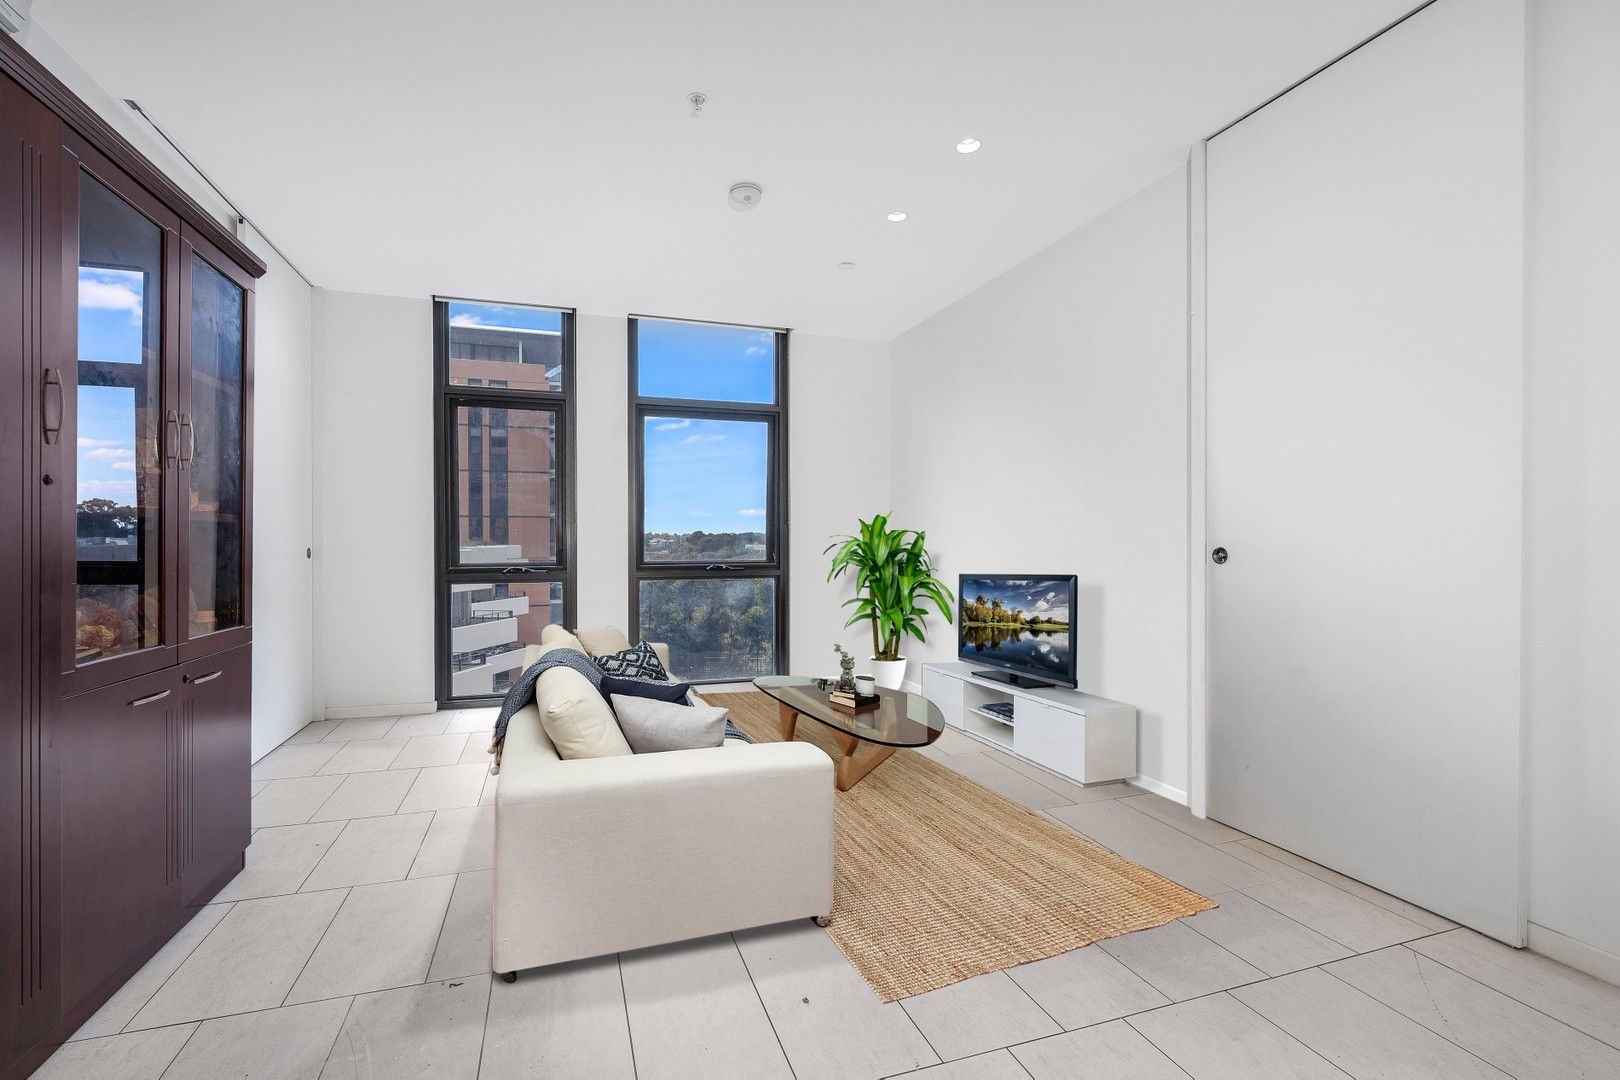 2 bedrooms Apartment / Unit / Flat in 302C/3 Broughton Street PARRAMATTA NSW, 2150